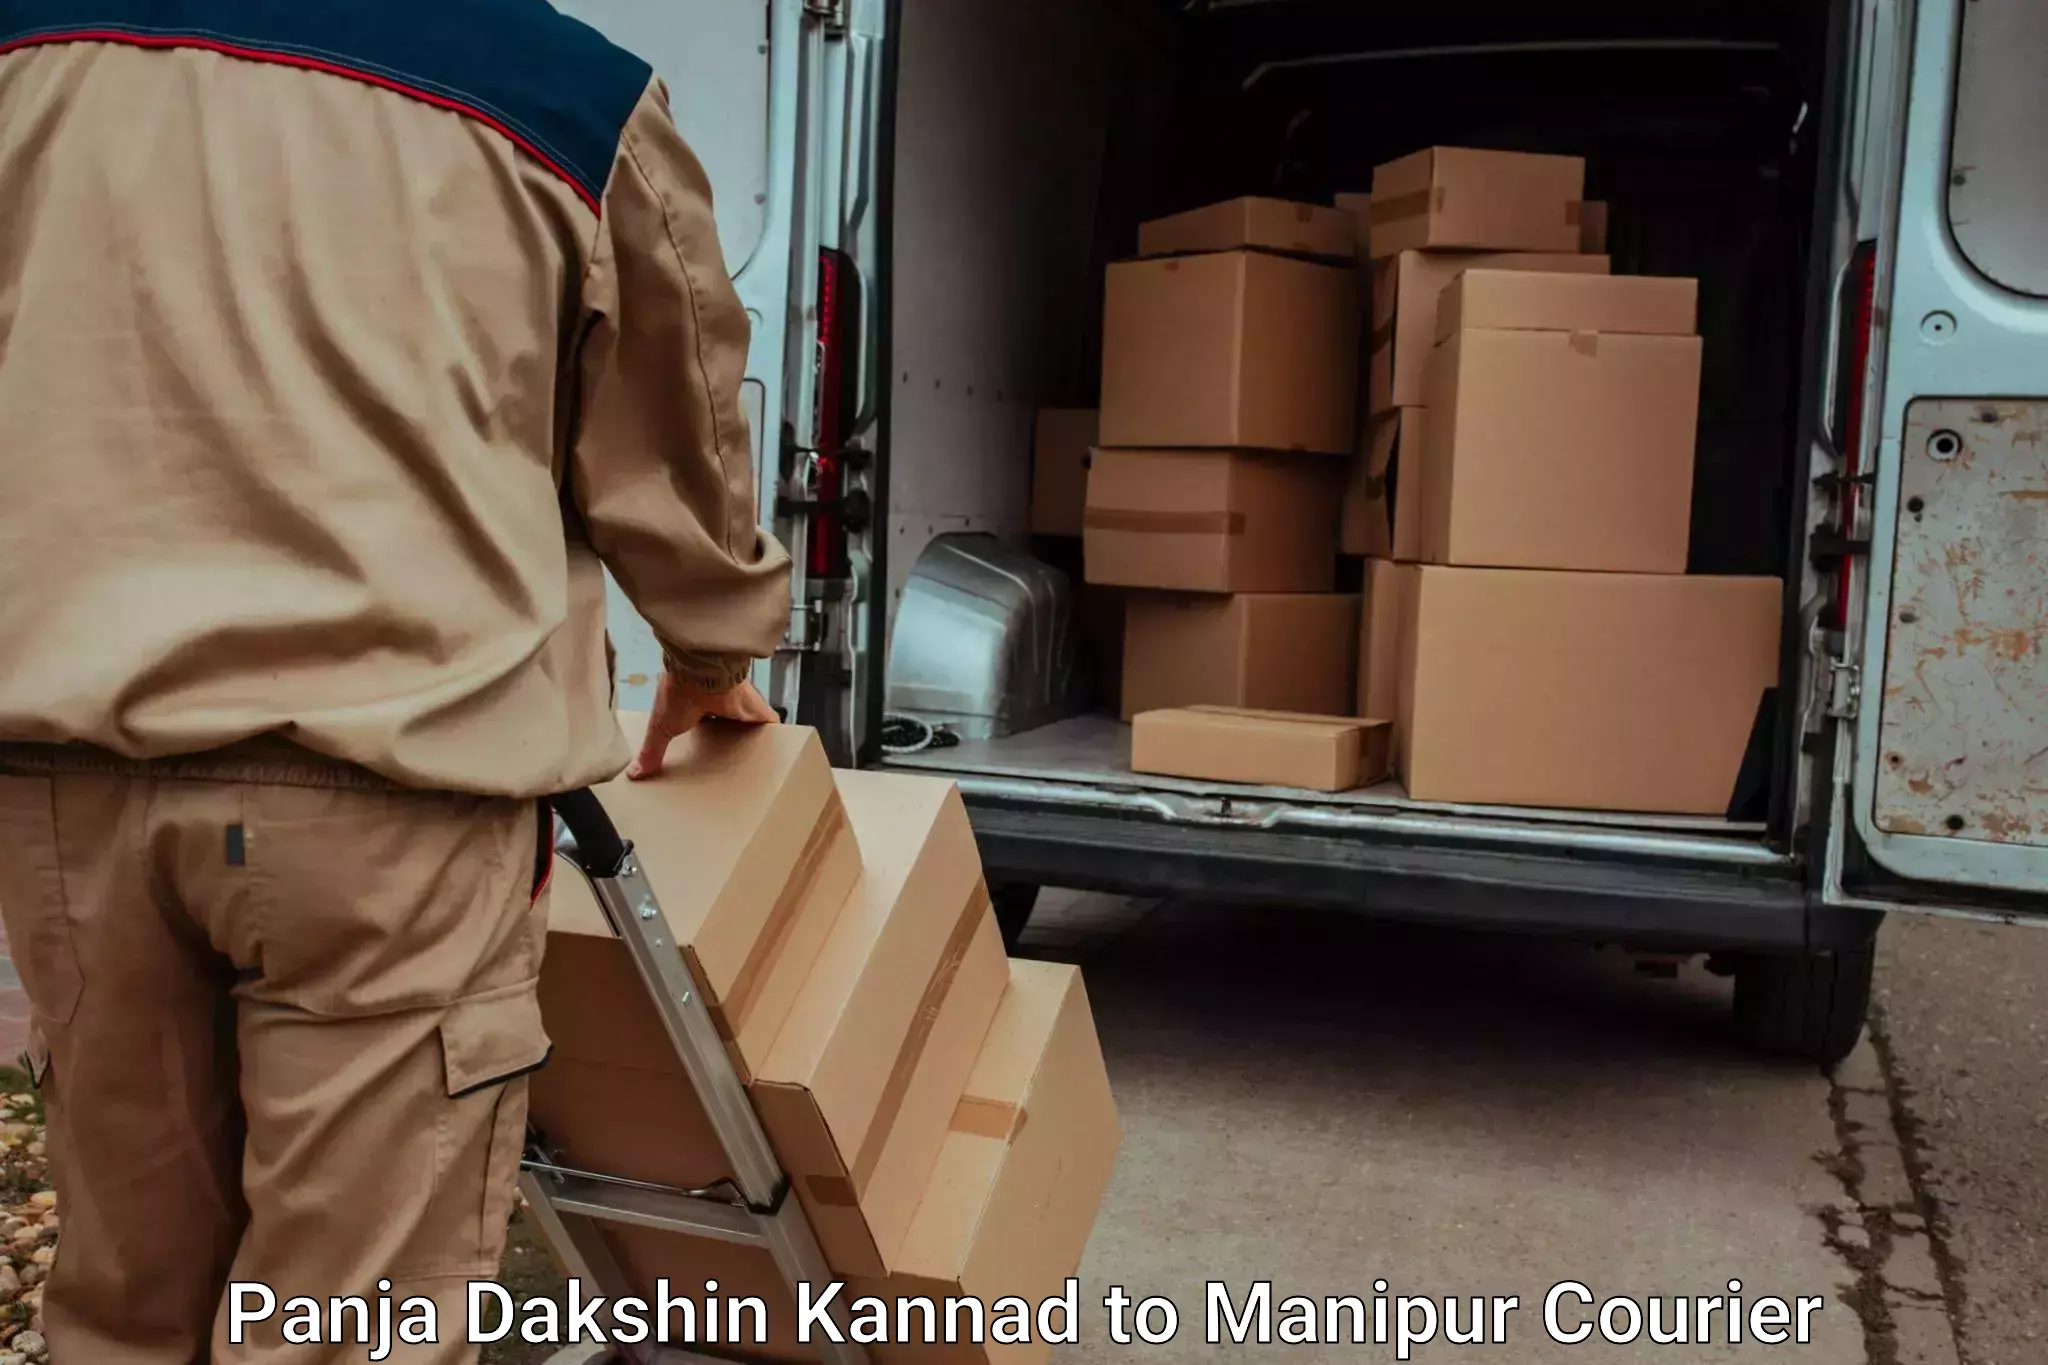 Furniture transport specialists Panja Dakshin Kannad to Manipur